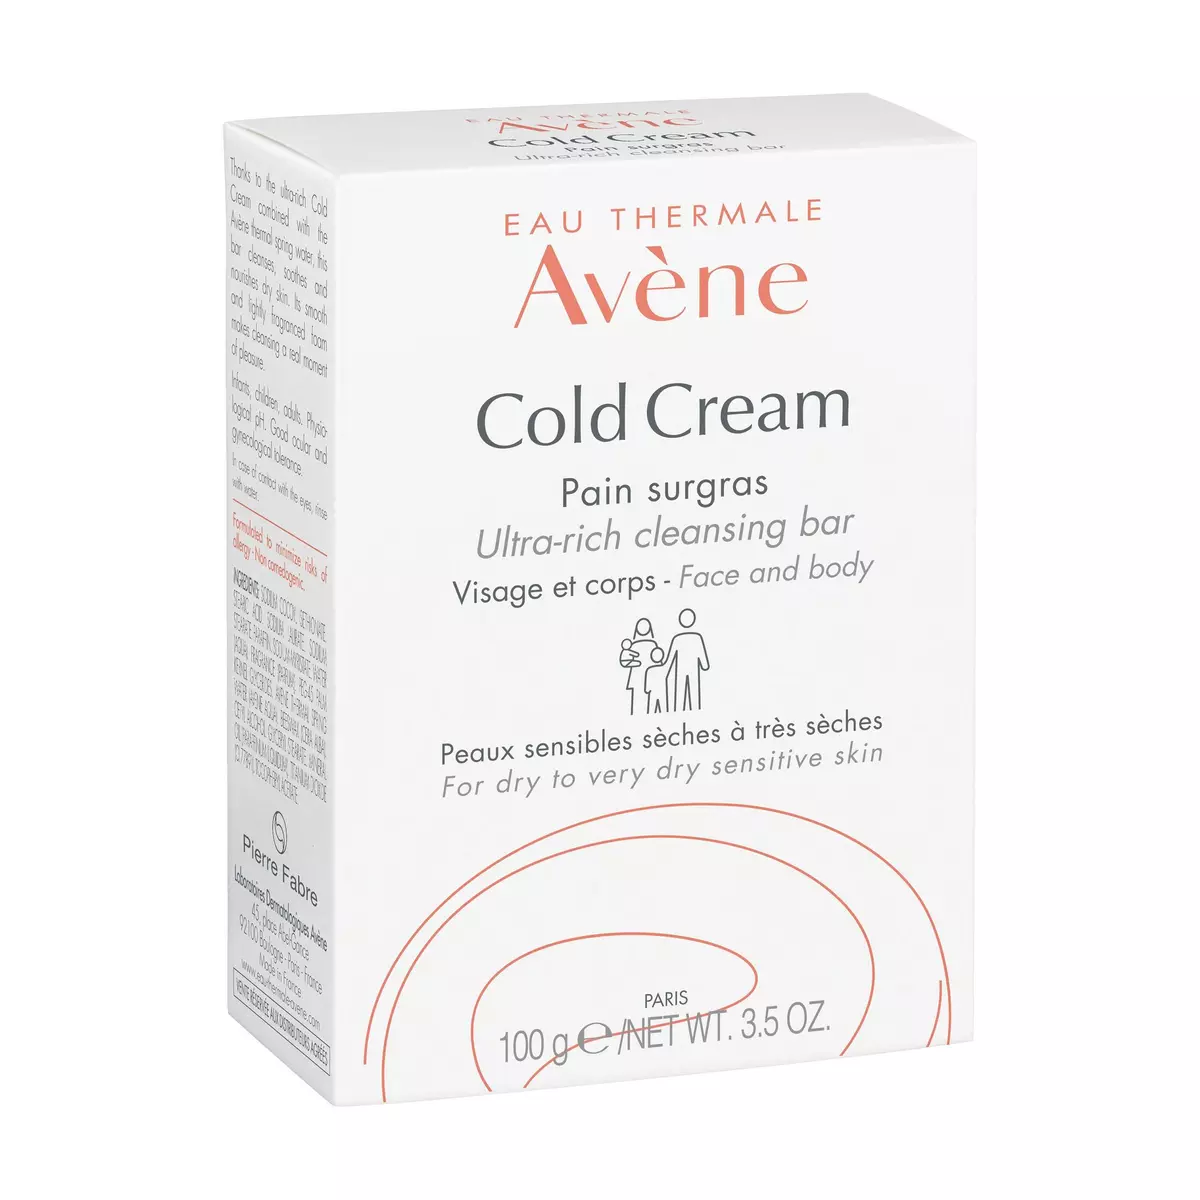 AVÈNE Cold Cream Pain surgras 1 pain 100g